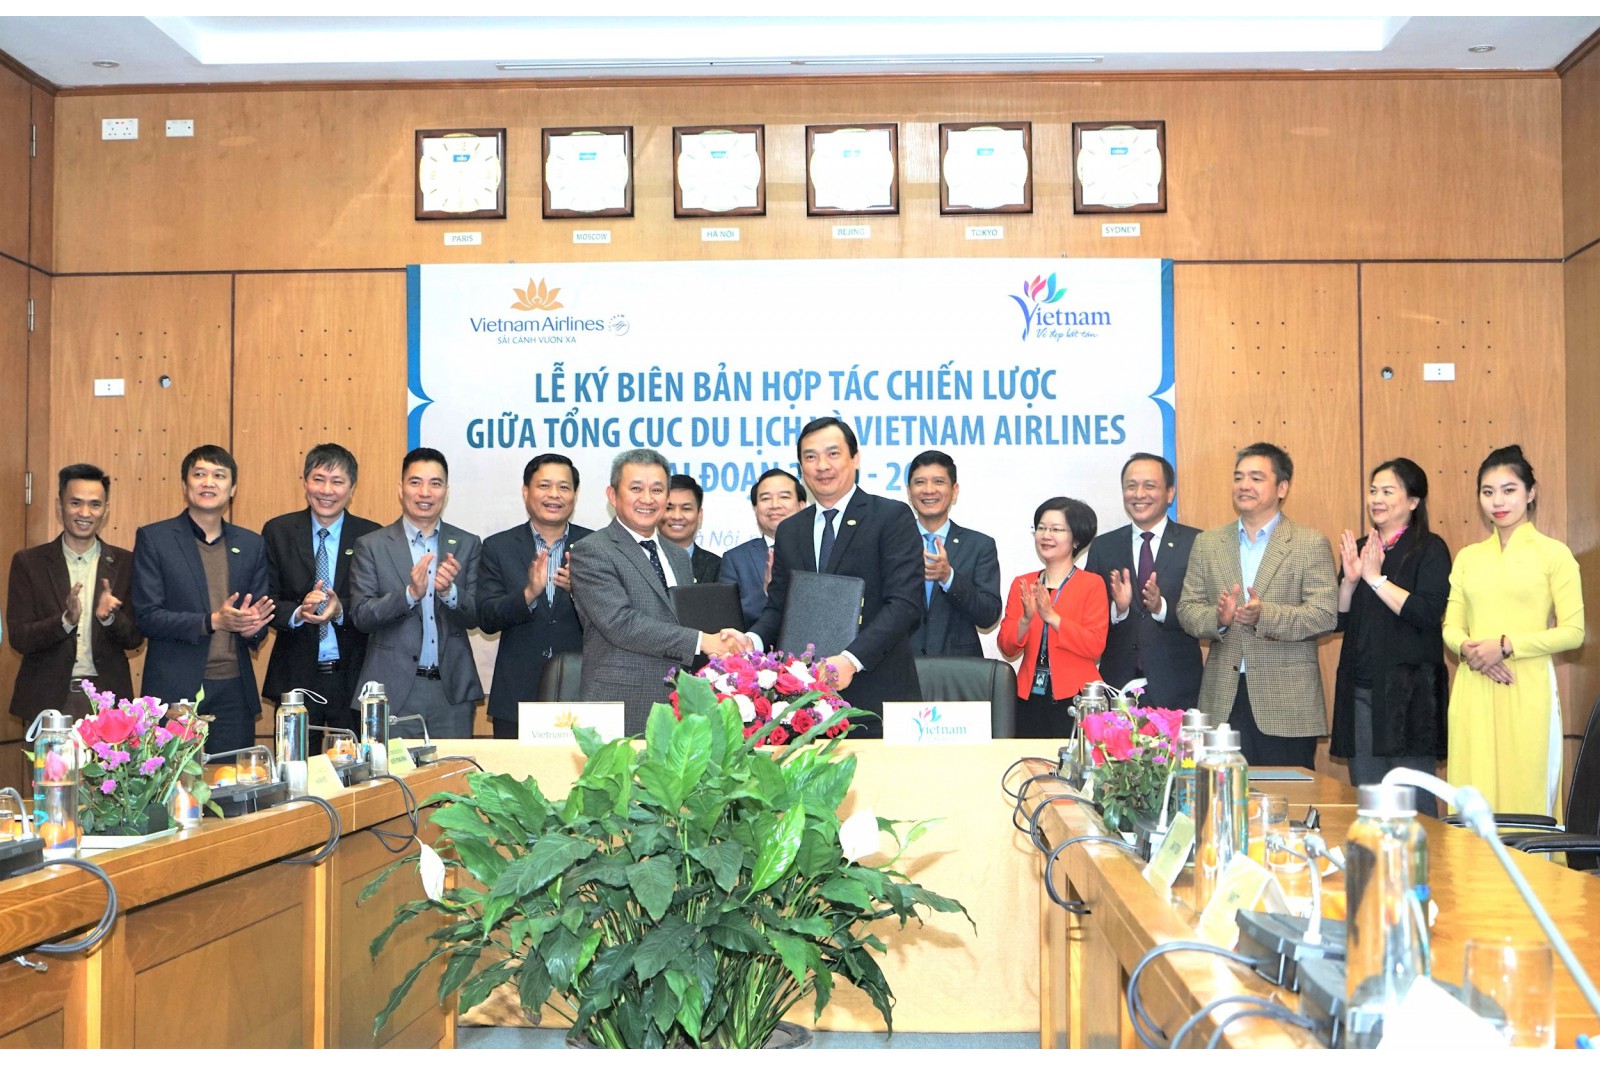 Ông Dương Trí Thành - Tổng giám đốc Vietnam Airlines (trái) và ông Nguyễn Trùng Khánh - Tổng cục trưởng TCDL (phải) ký kết Biên bản hợp tác chiến lược giai đoạn 2020-2022 về quảng bá, xúc tiến du lịch